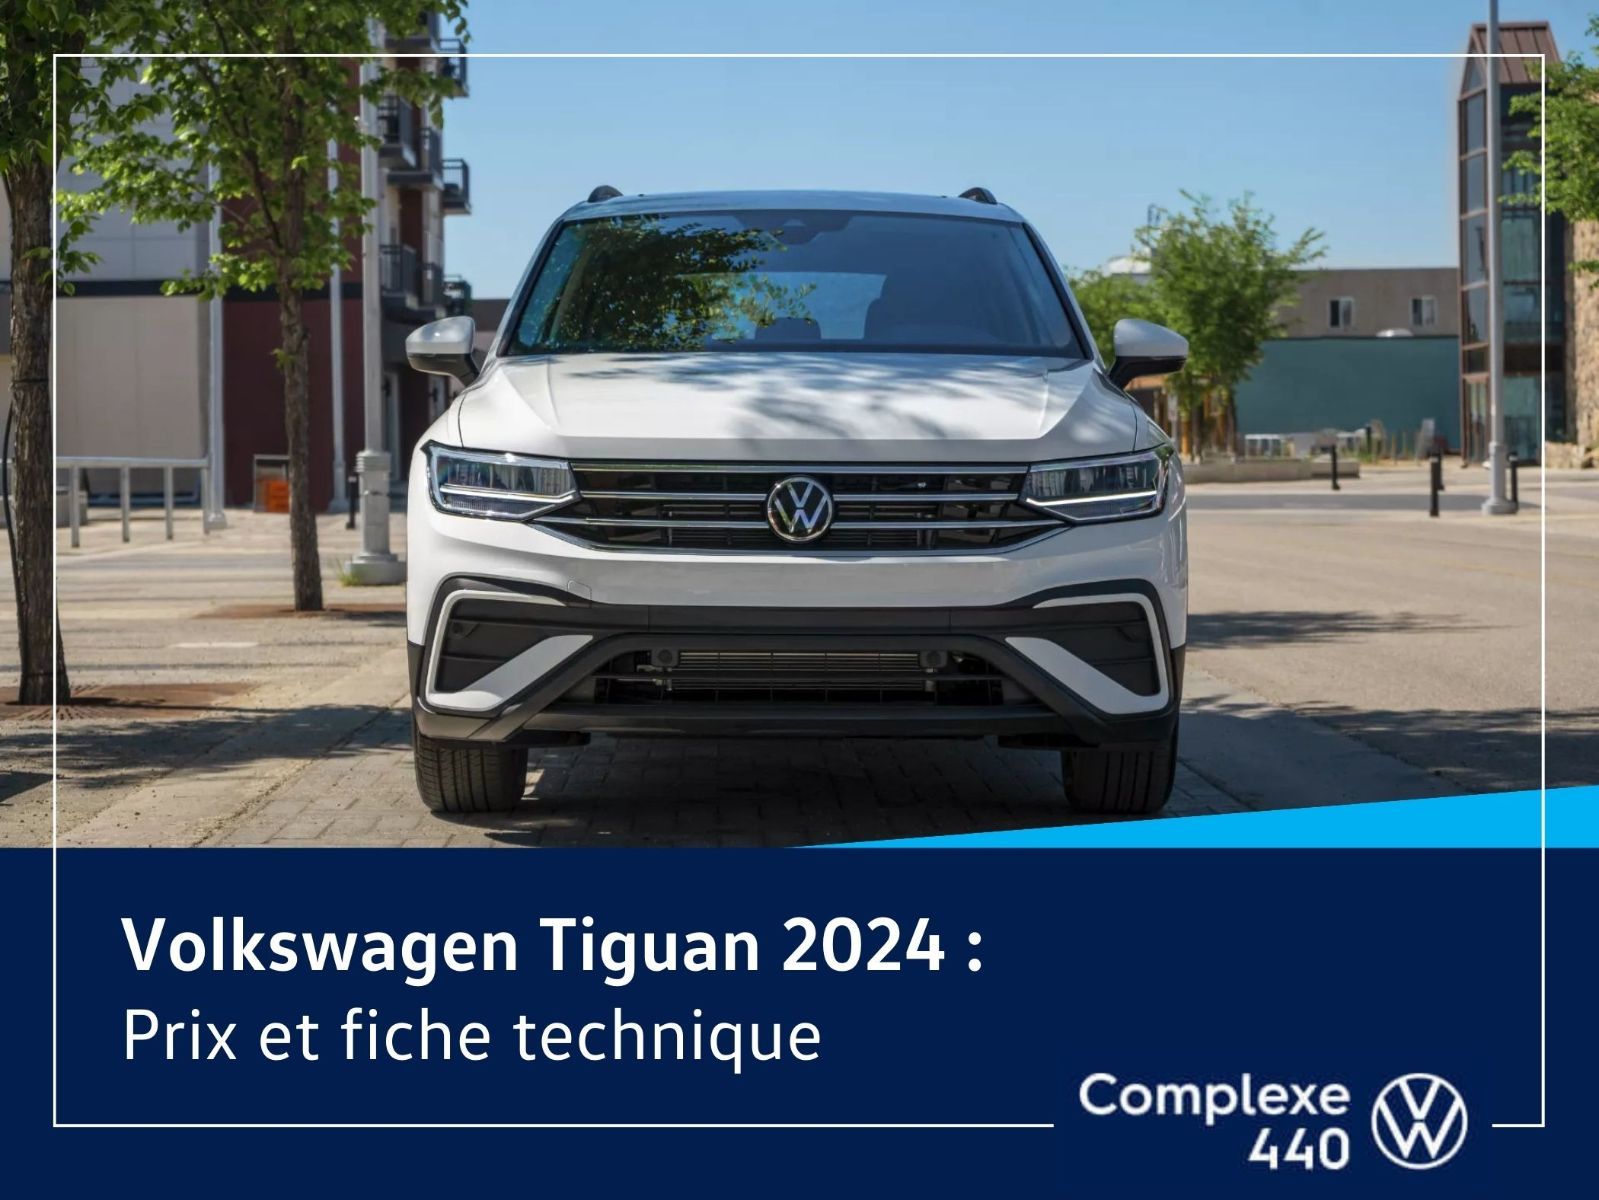 image entête - VW Tiguan 2024 Prix et fiche technique